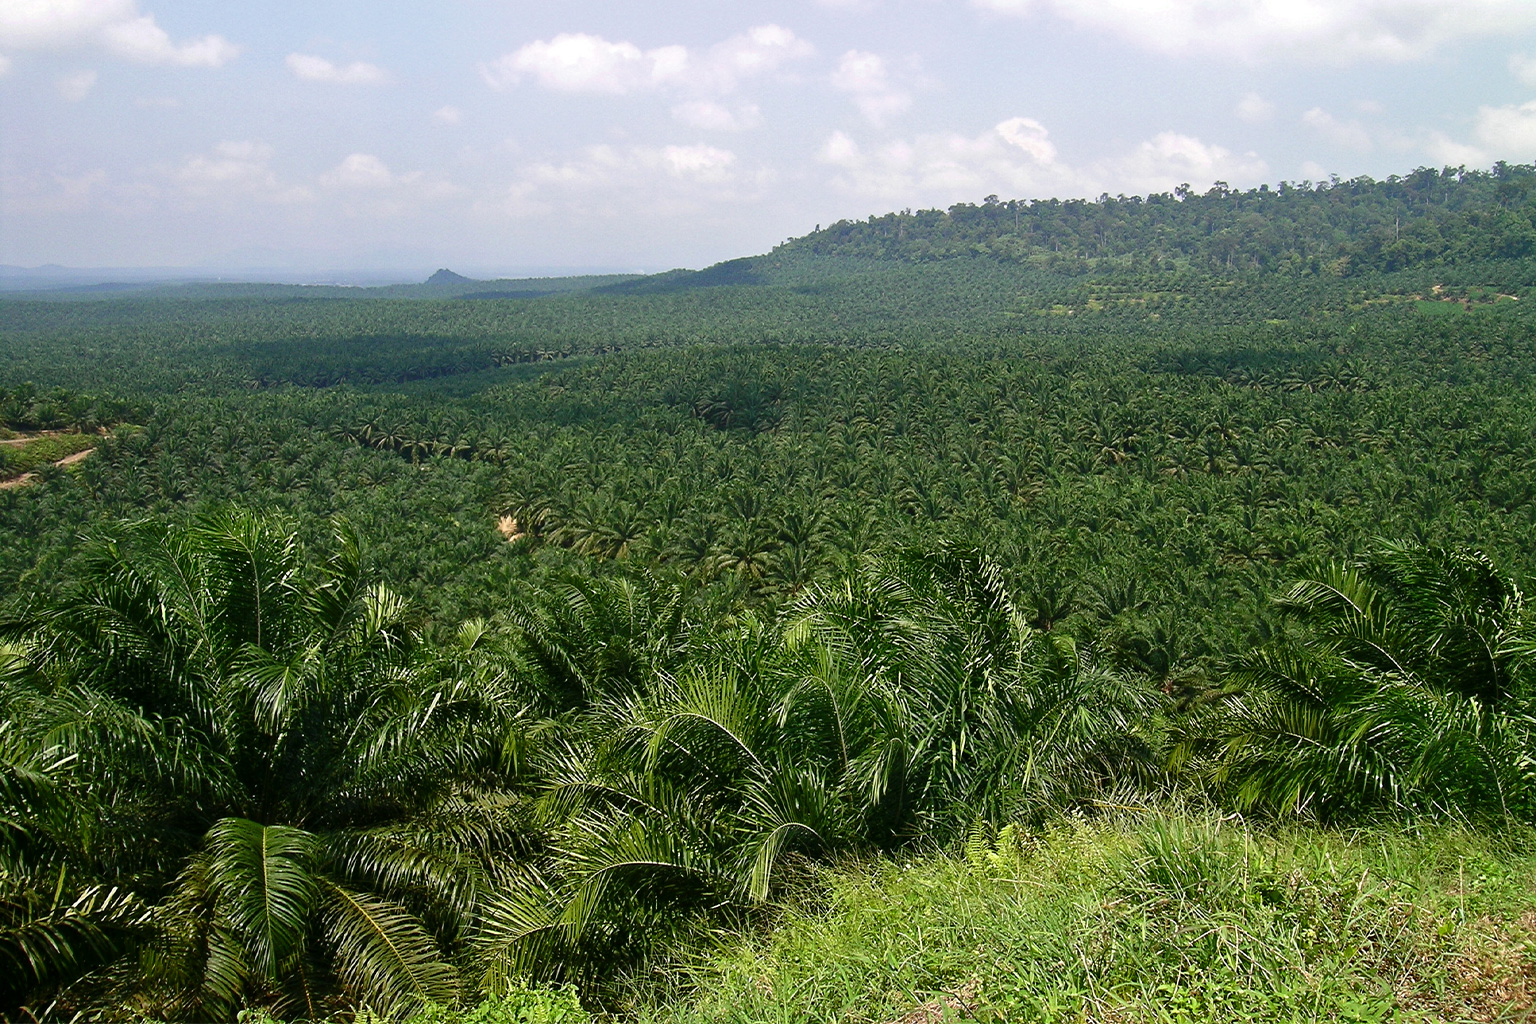 Plantación de palma aceitera en Sabah, Malasia (isla de Borneo). La conversión del hábitat para la producción de aceite de palma ha reducido y fragmentado el hábitat de los felinos pequeños en la isla. La investigación muestra que algunas especies, como el gato de Bengala (Prionailurus bengalensis), pueden adaptarse a este ambiente modificado. (Imagen cortesía de Lian Pin Koh a través de Flickr (CC BY 2.0).